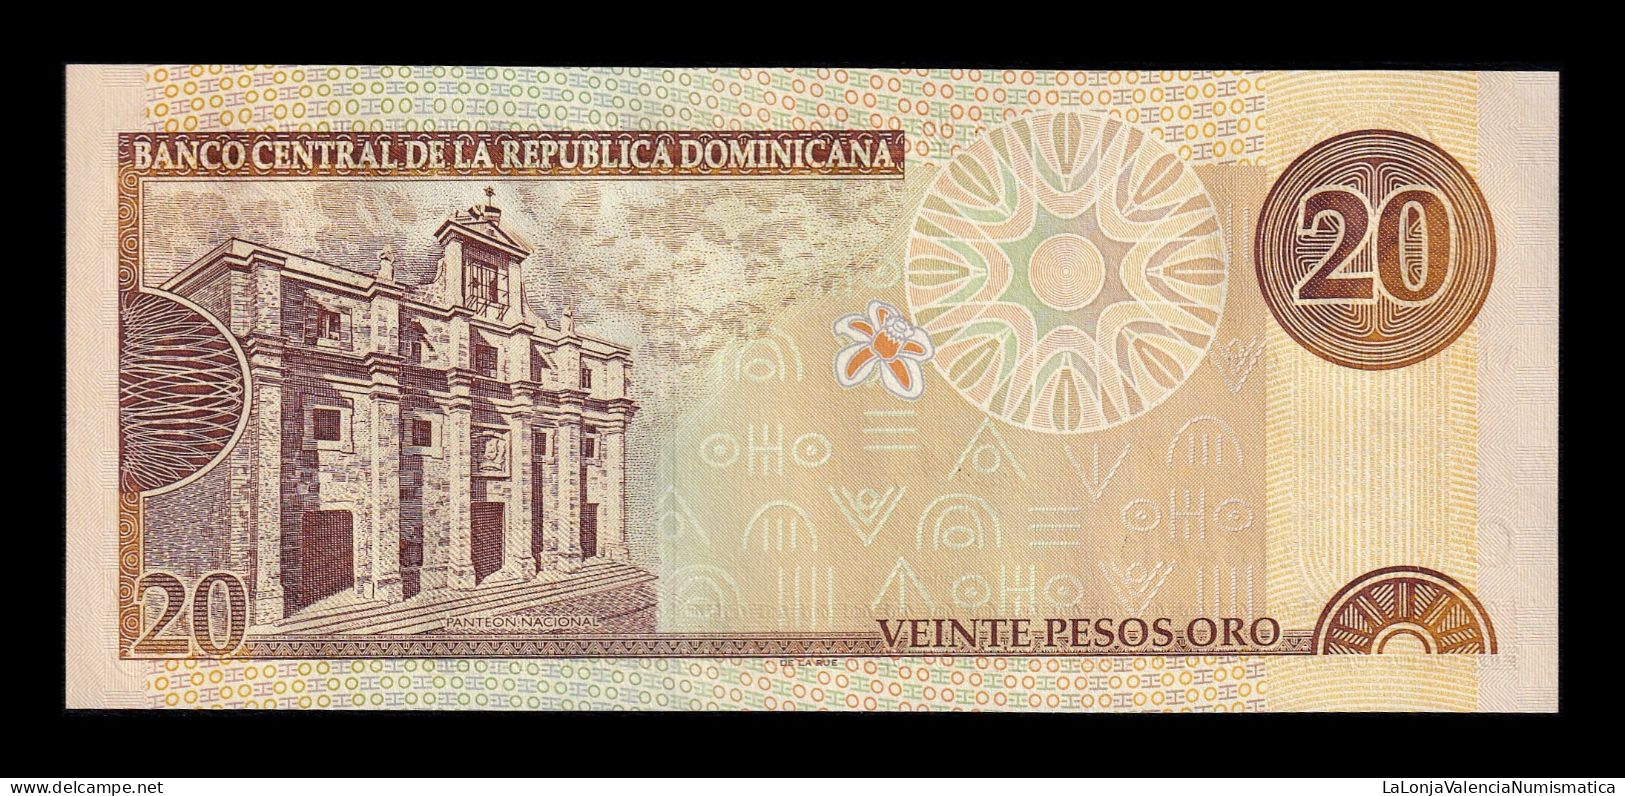 República Dominicana 20 Pesos Oro 2001 Pick 169a Sc Unc - República Dominicana